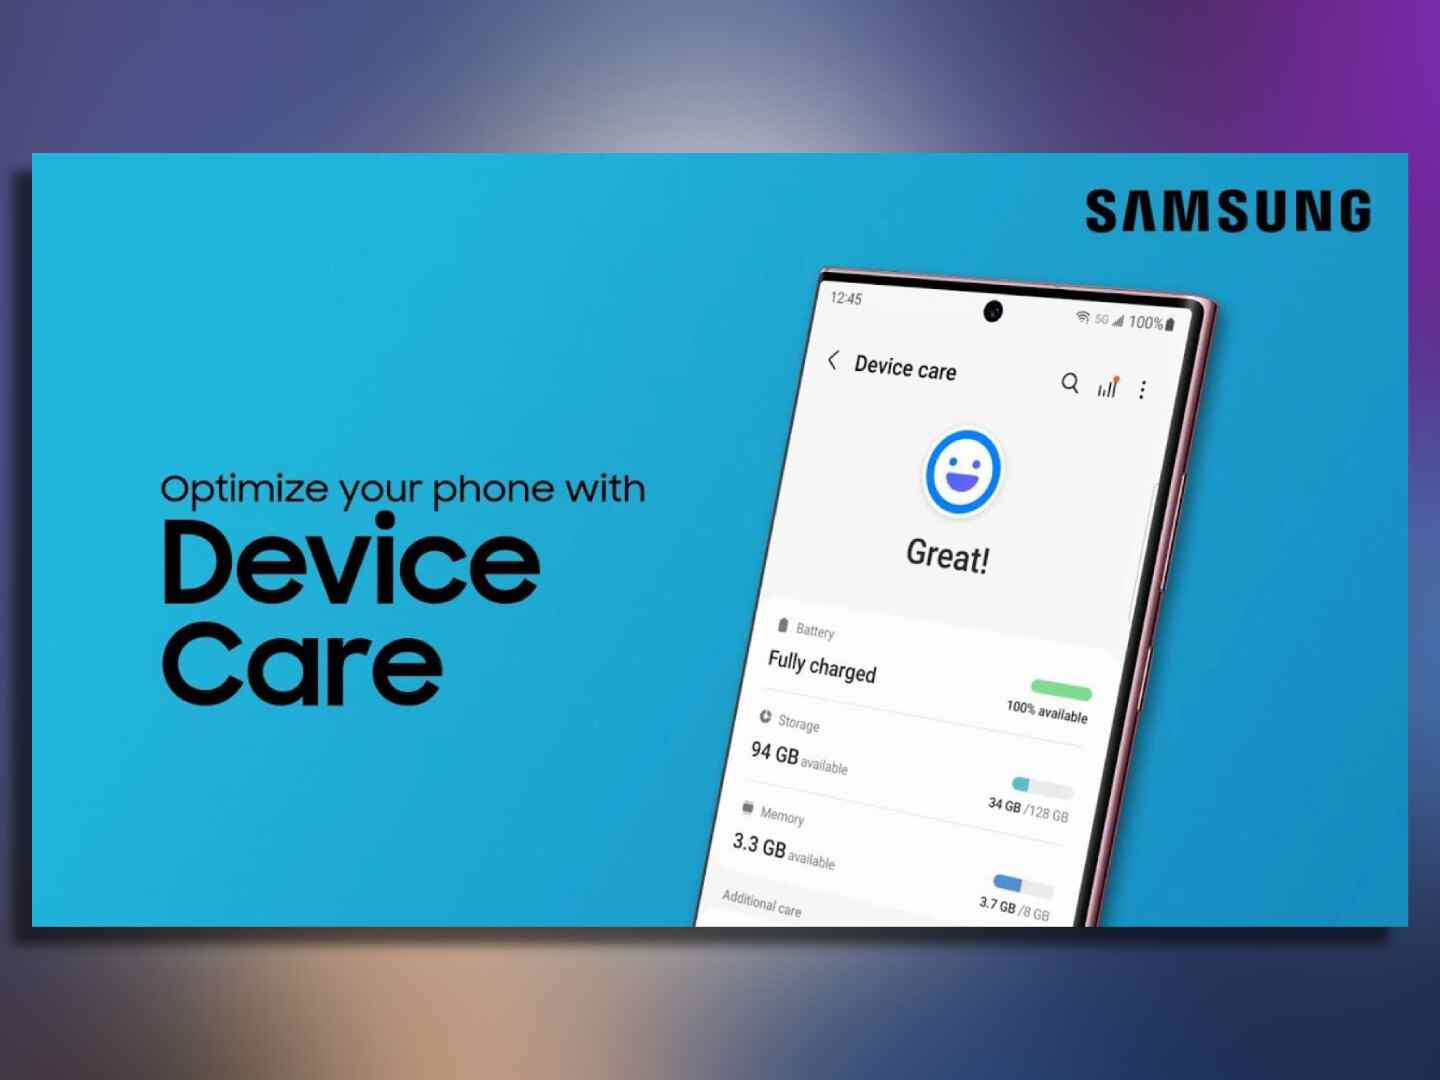 Samsung'un kendi yerleşik temizleme uygulaması vardır ve onu kullanmalısınız... Ayrıca.  - Android telefonunuz neden bu kadar yavaş?  Önemli değil, nasıl düzeltileceği aşağıda açıklanmıştır!